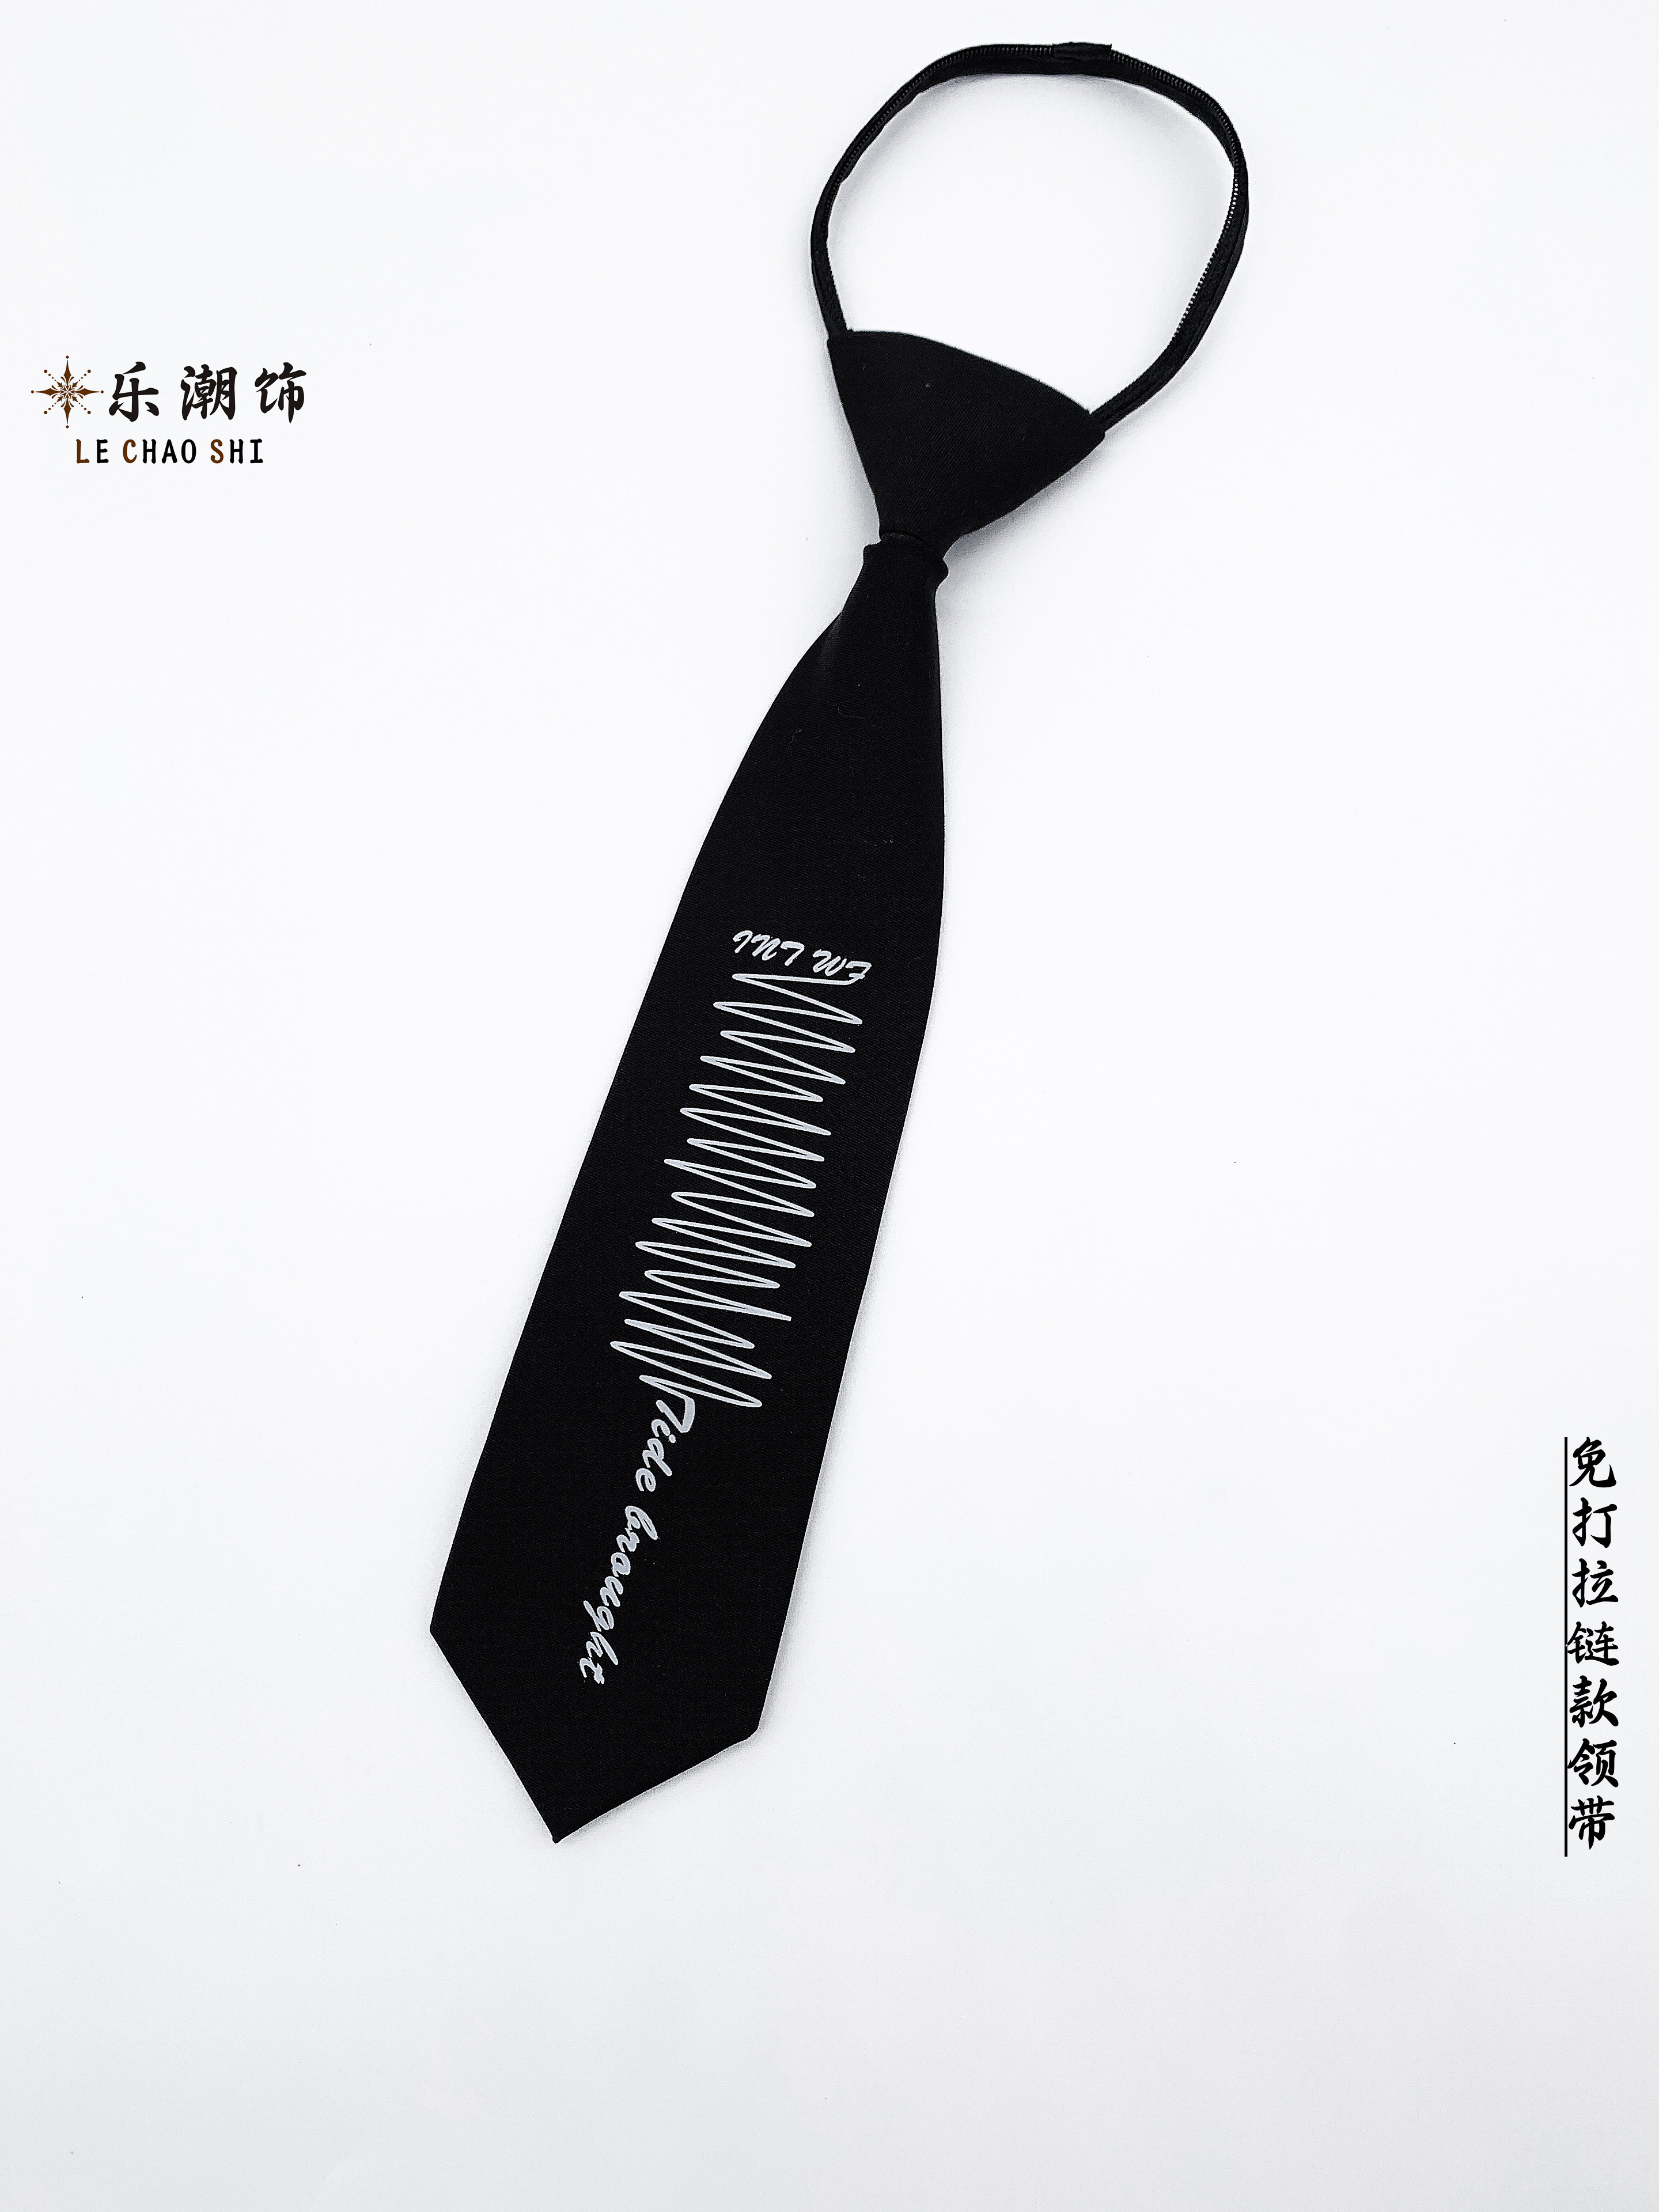 Lechao Decoration Original Trendy Brand Black Shirt with No Zipper Tie for Men and Women Korean Edition Pi Shuai Design with Line Printing